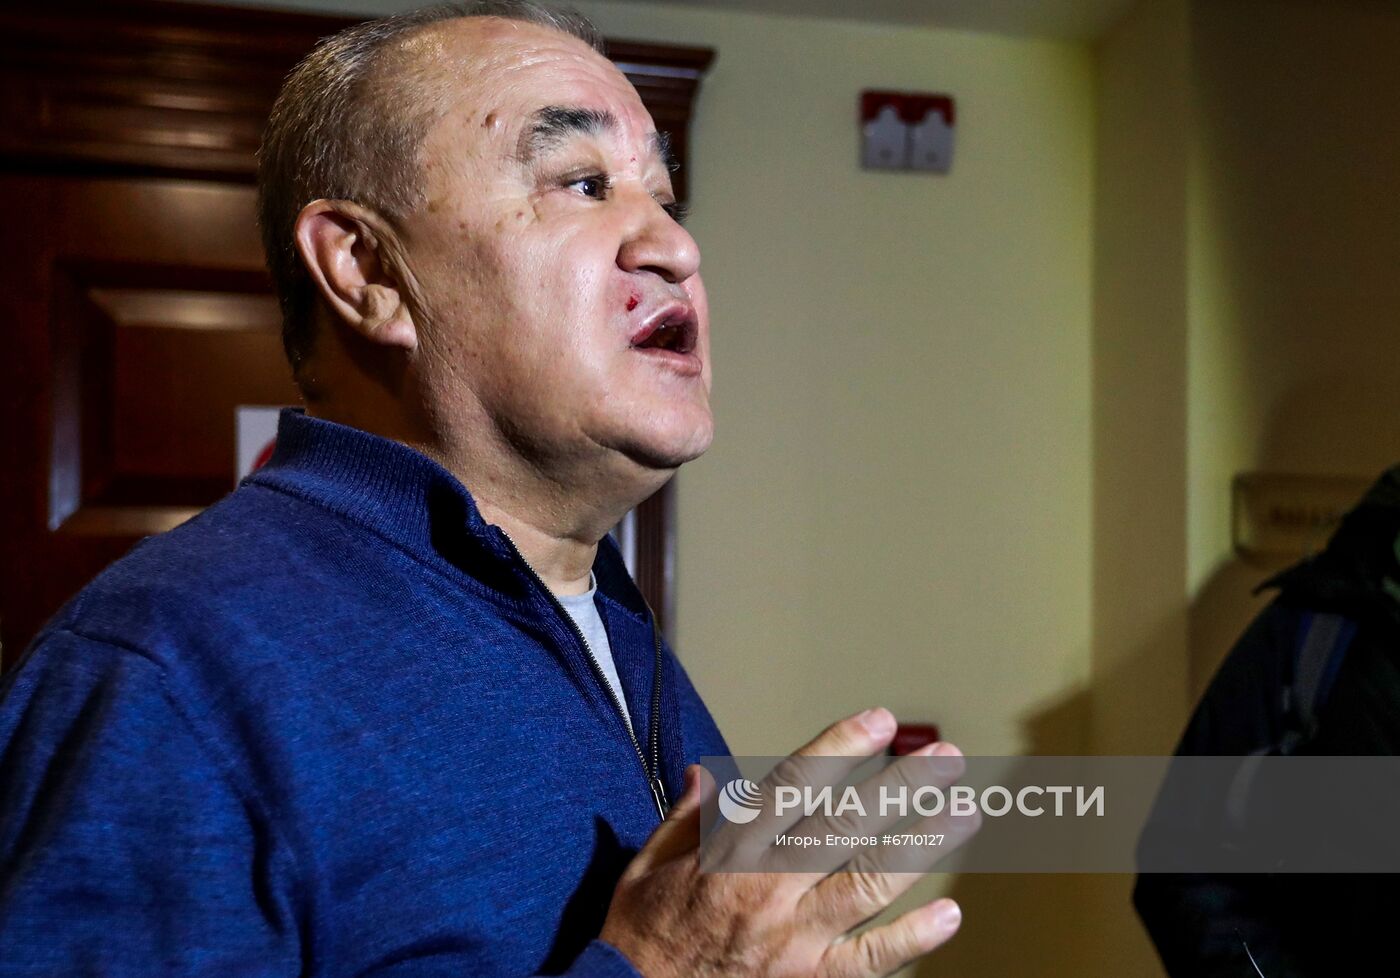 П/к лидера партии "Ата Мекен" О. Текебаева 